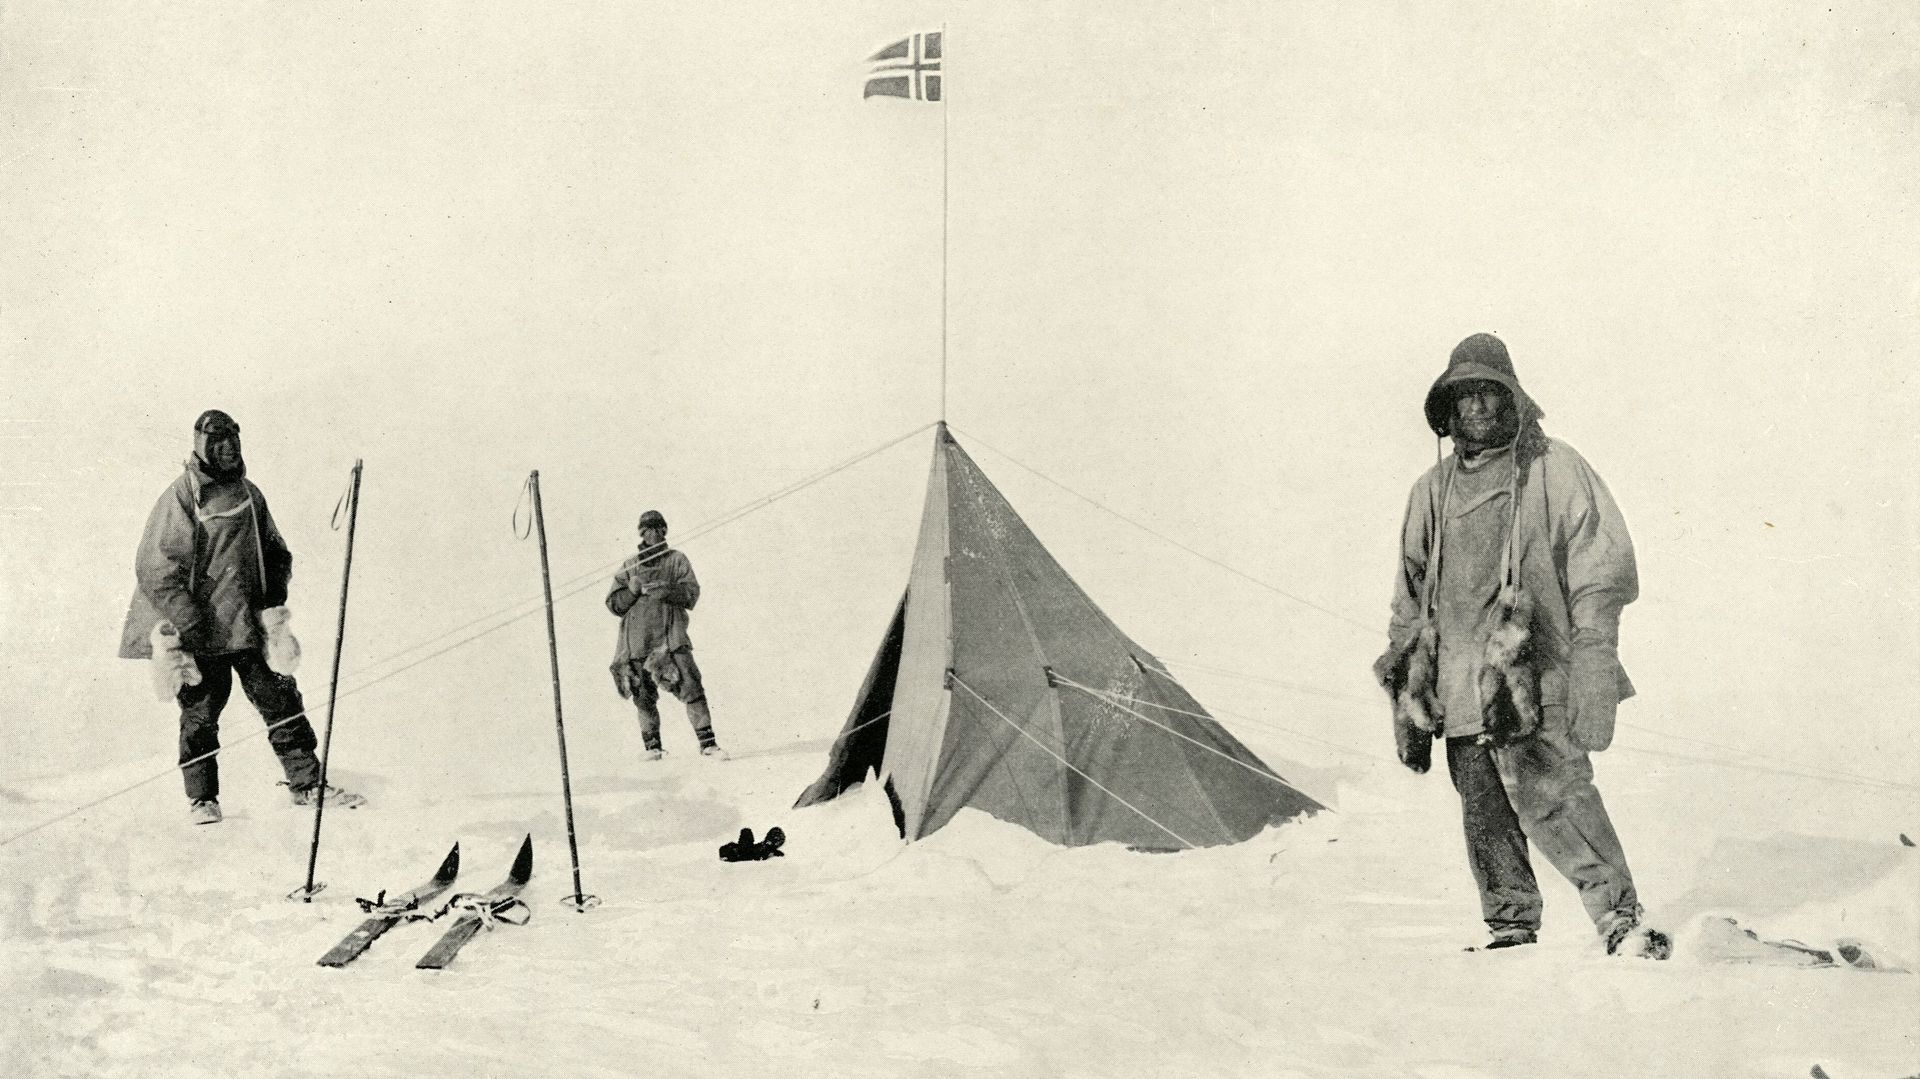 Le drapeau et la tente dressés par Roald Amundsen, une fois arrivé au pôle Sud